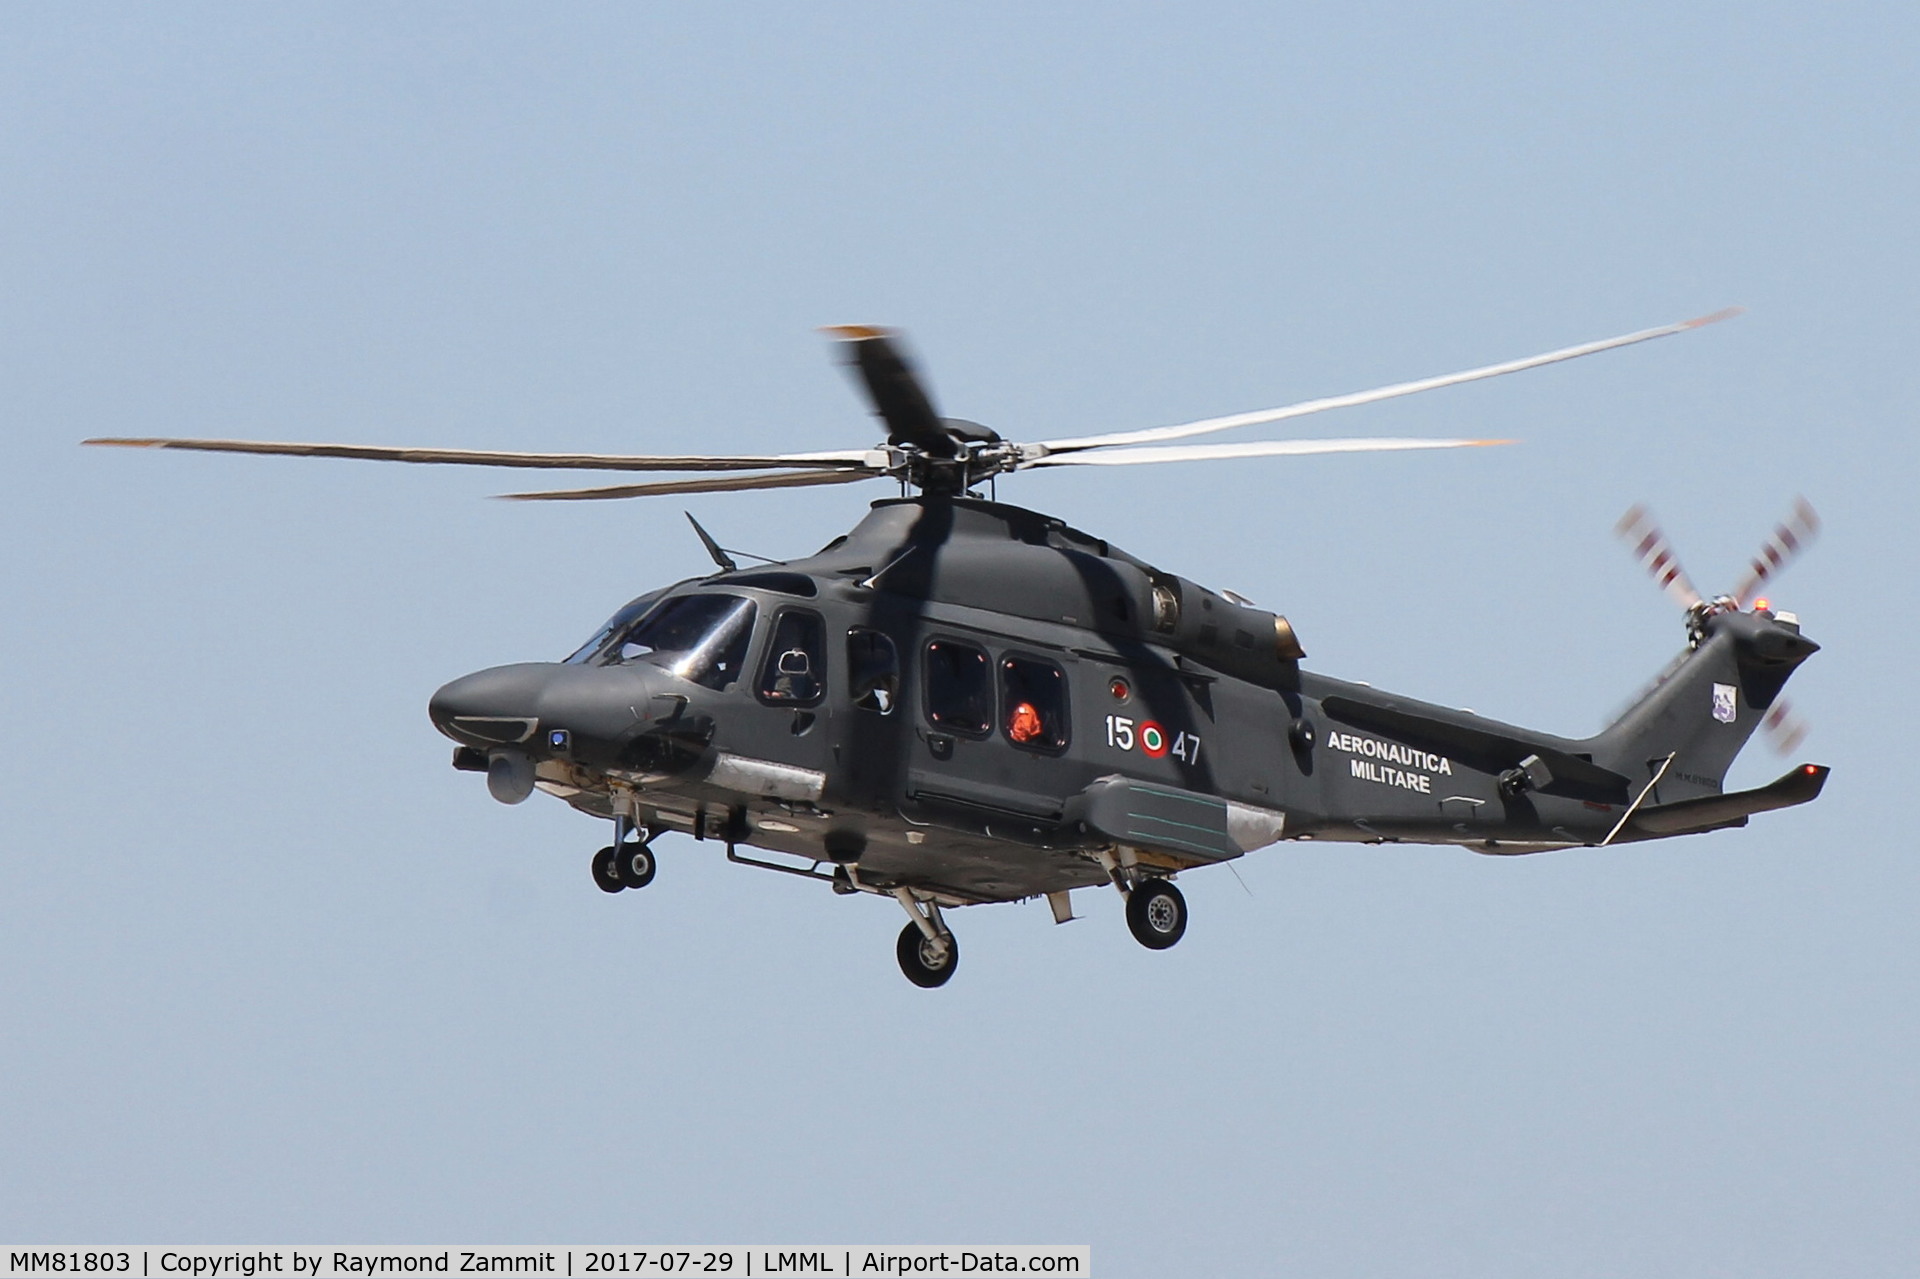 MM81803, AgustaWestland HH-139A C/N 31469, Agu8staWestland HH-a39A MM81803/15-47 Italian Air Force